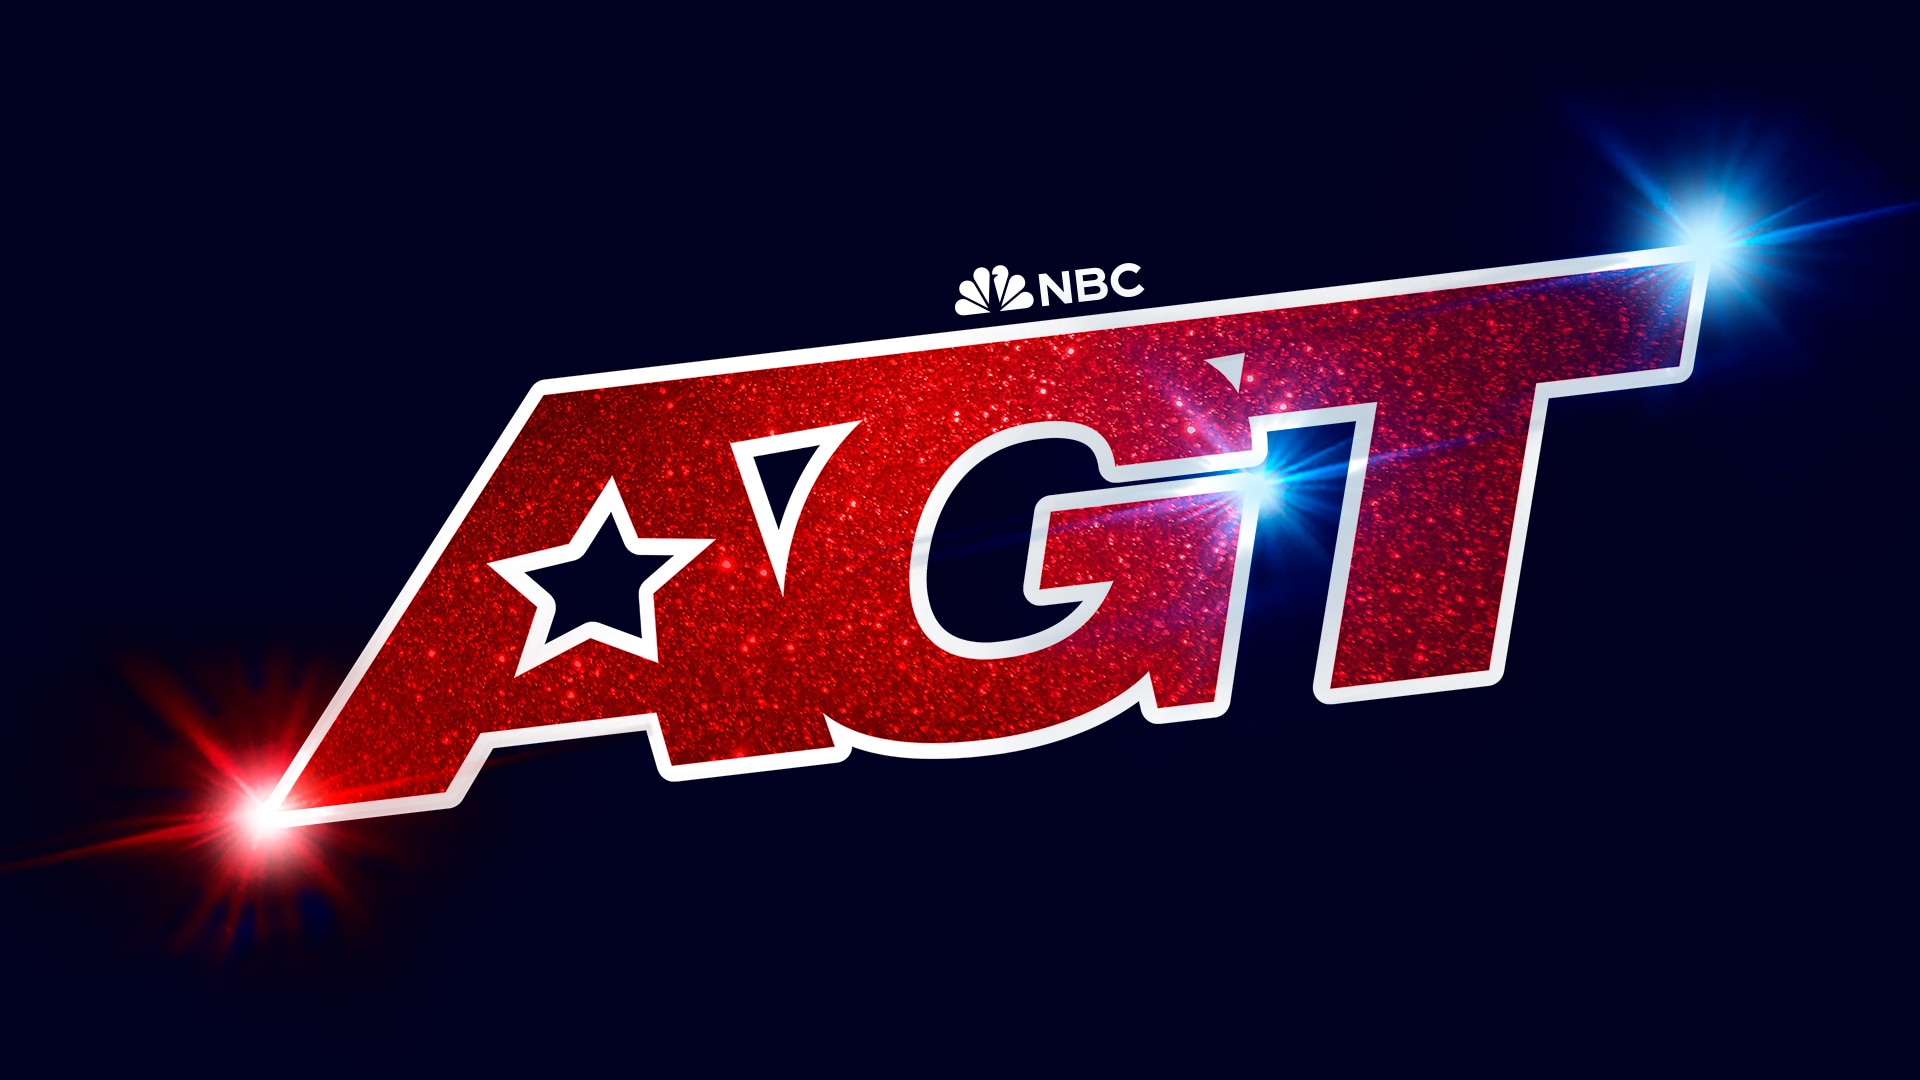 America's Got Talent - NBC.com